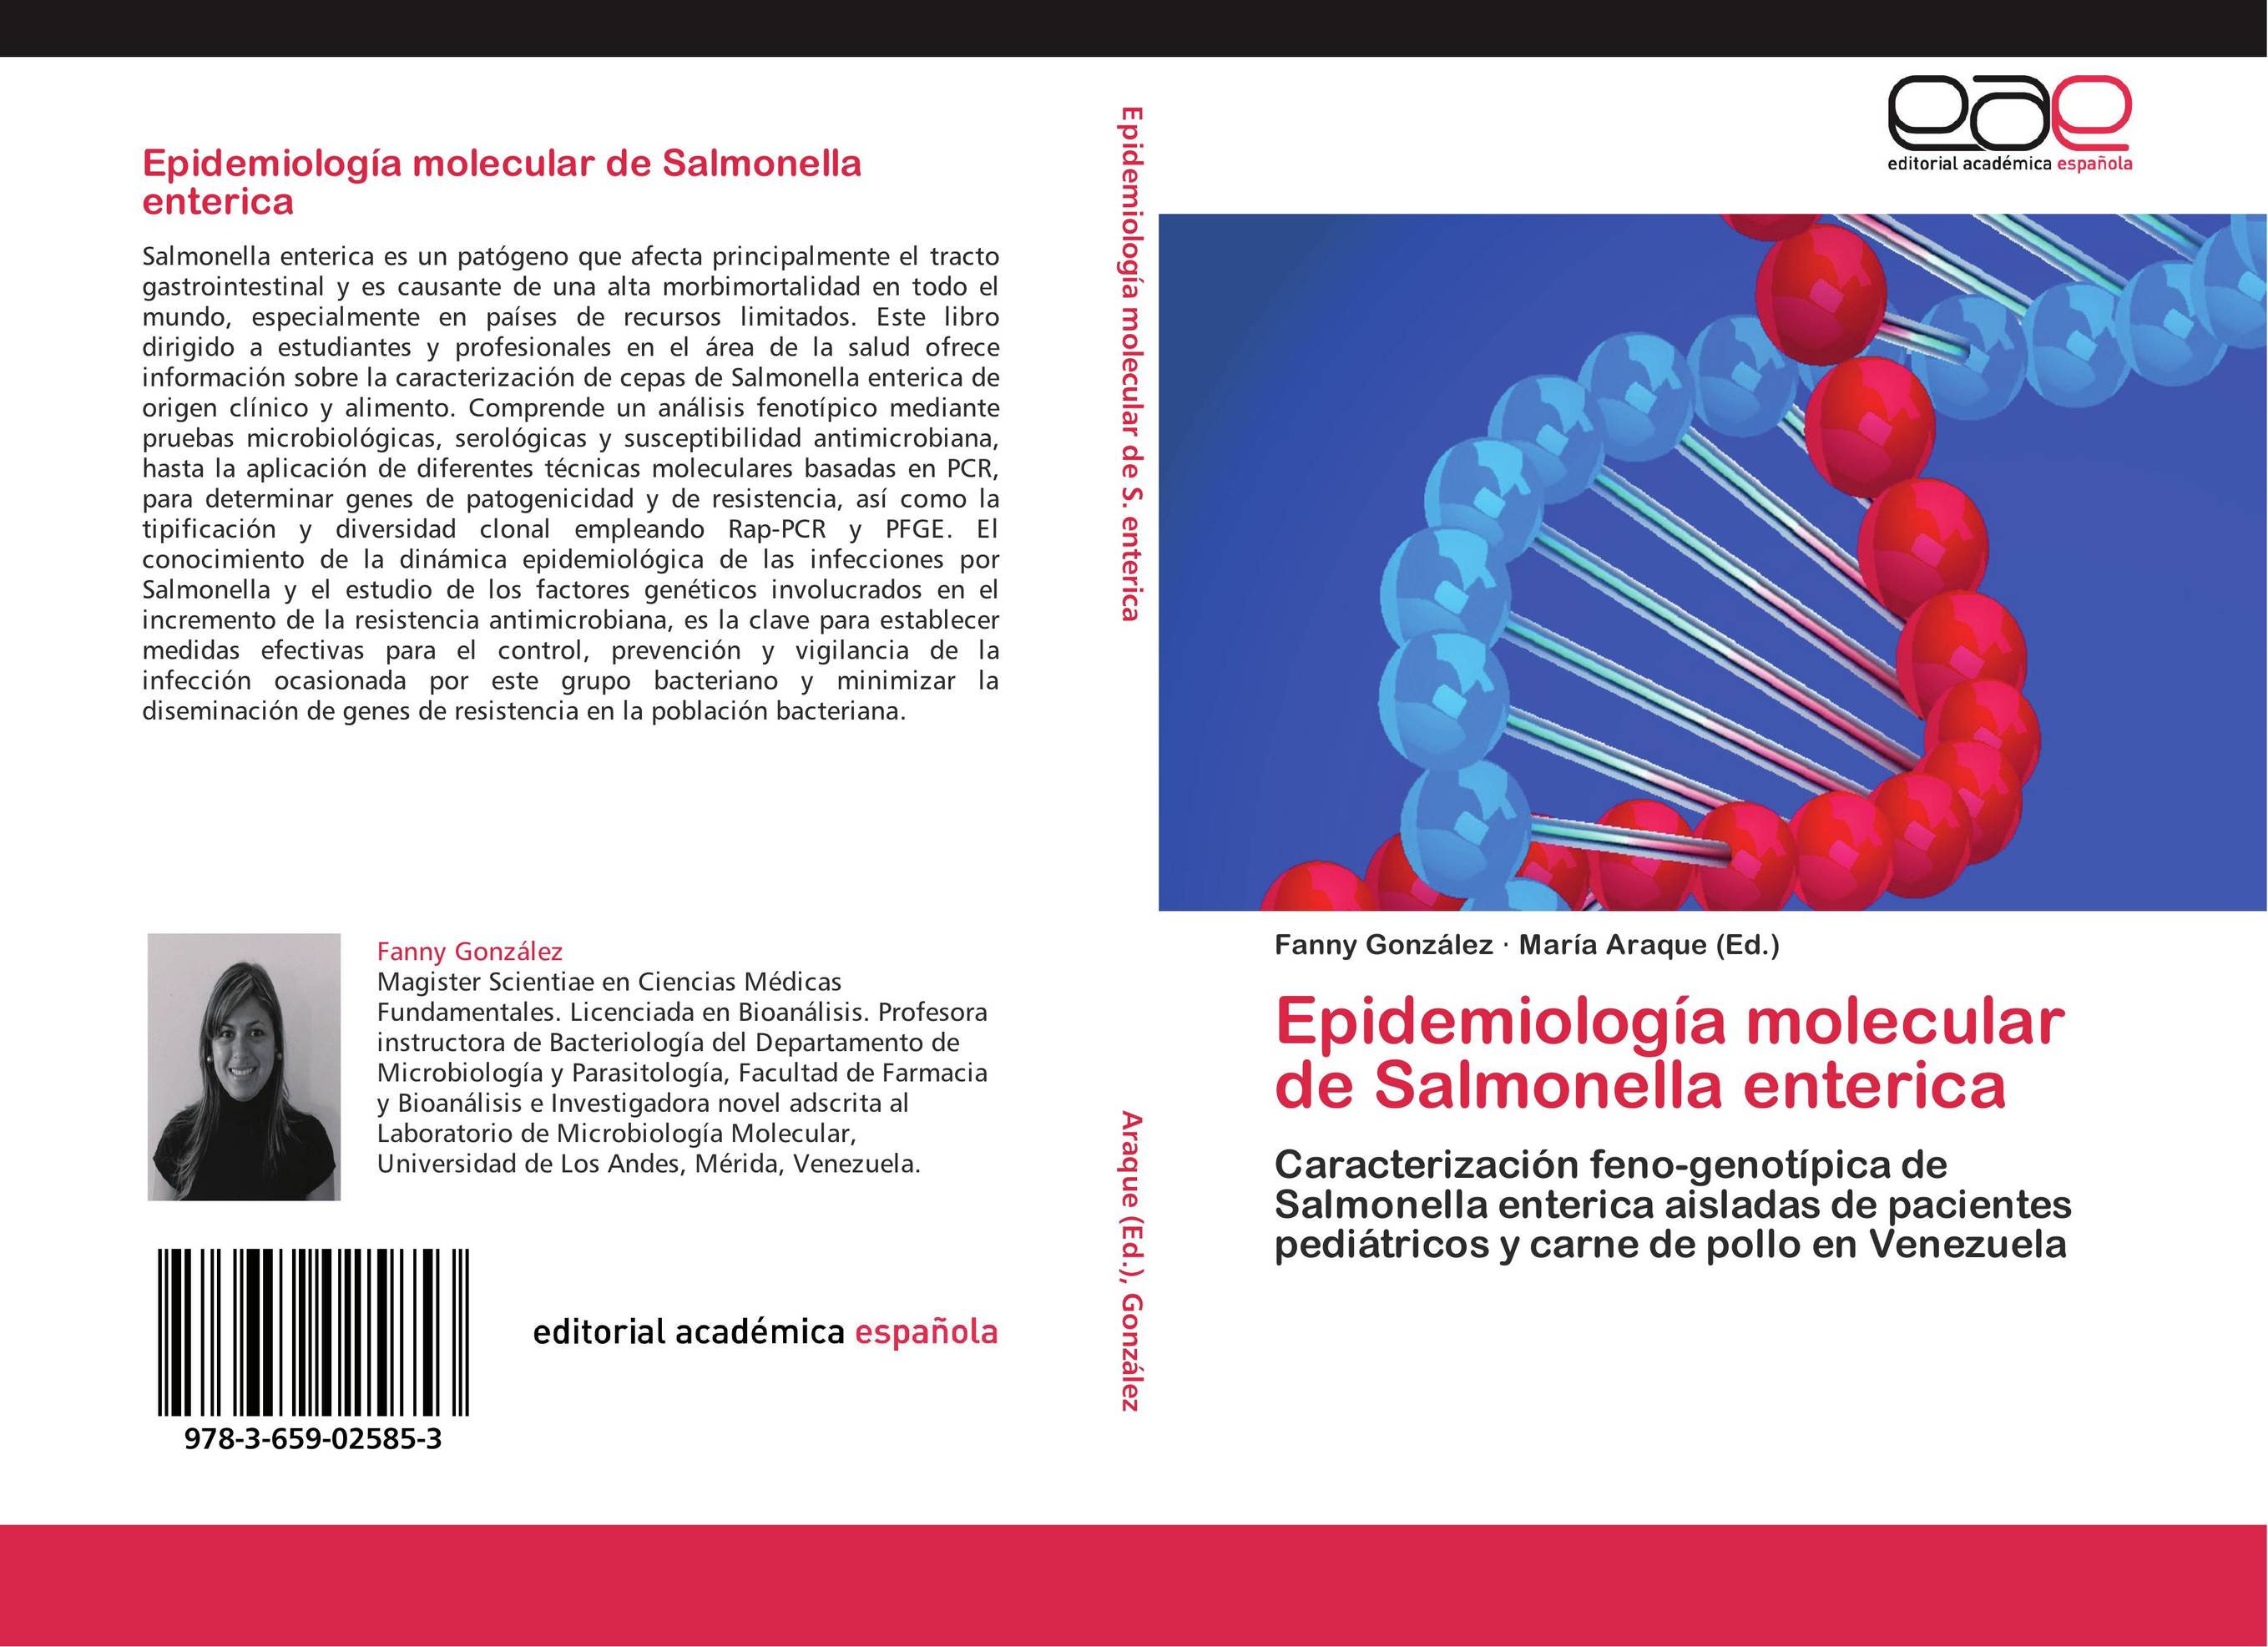 Epidemiología molecular de Salmonella enterica